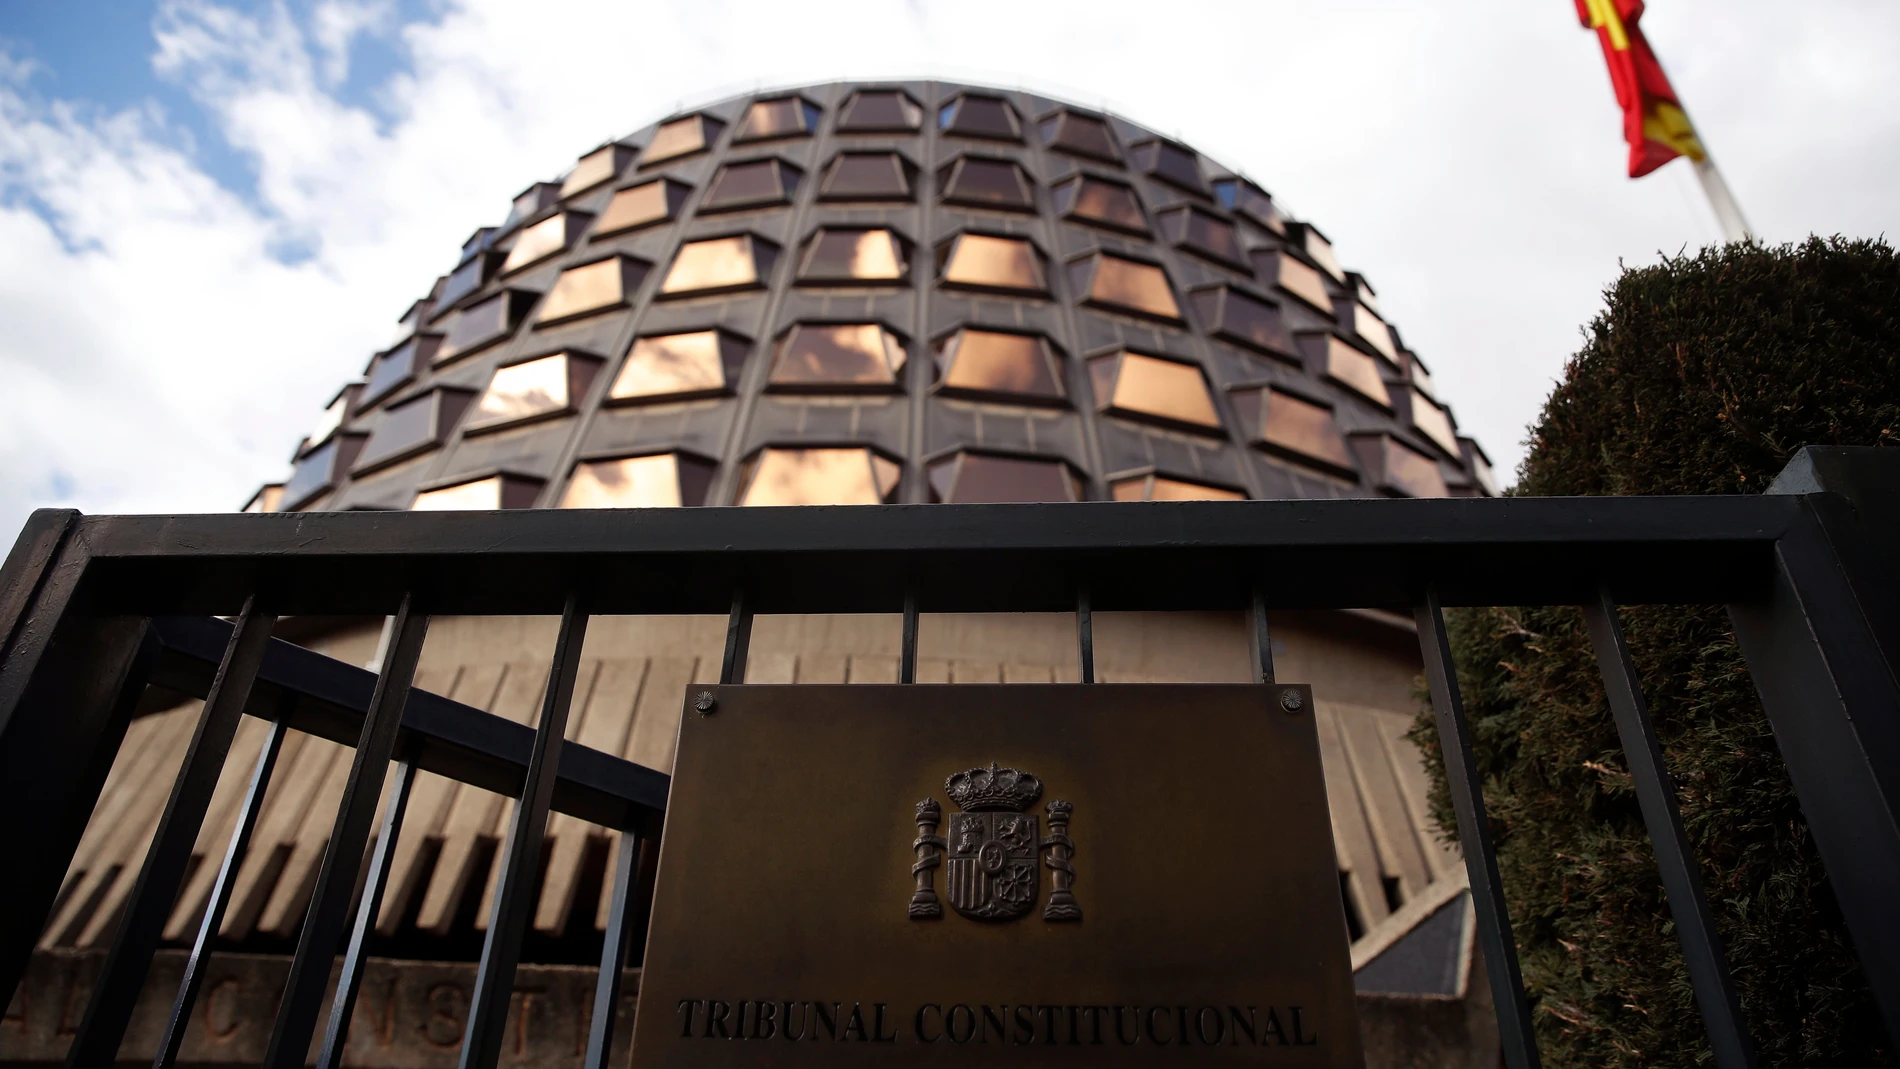 Sede del Tribunal Constitucional